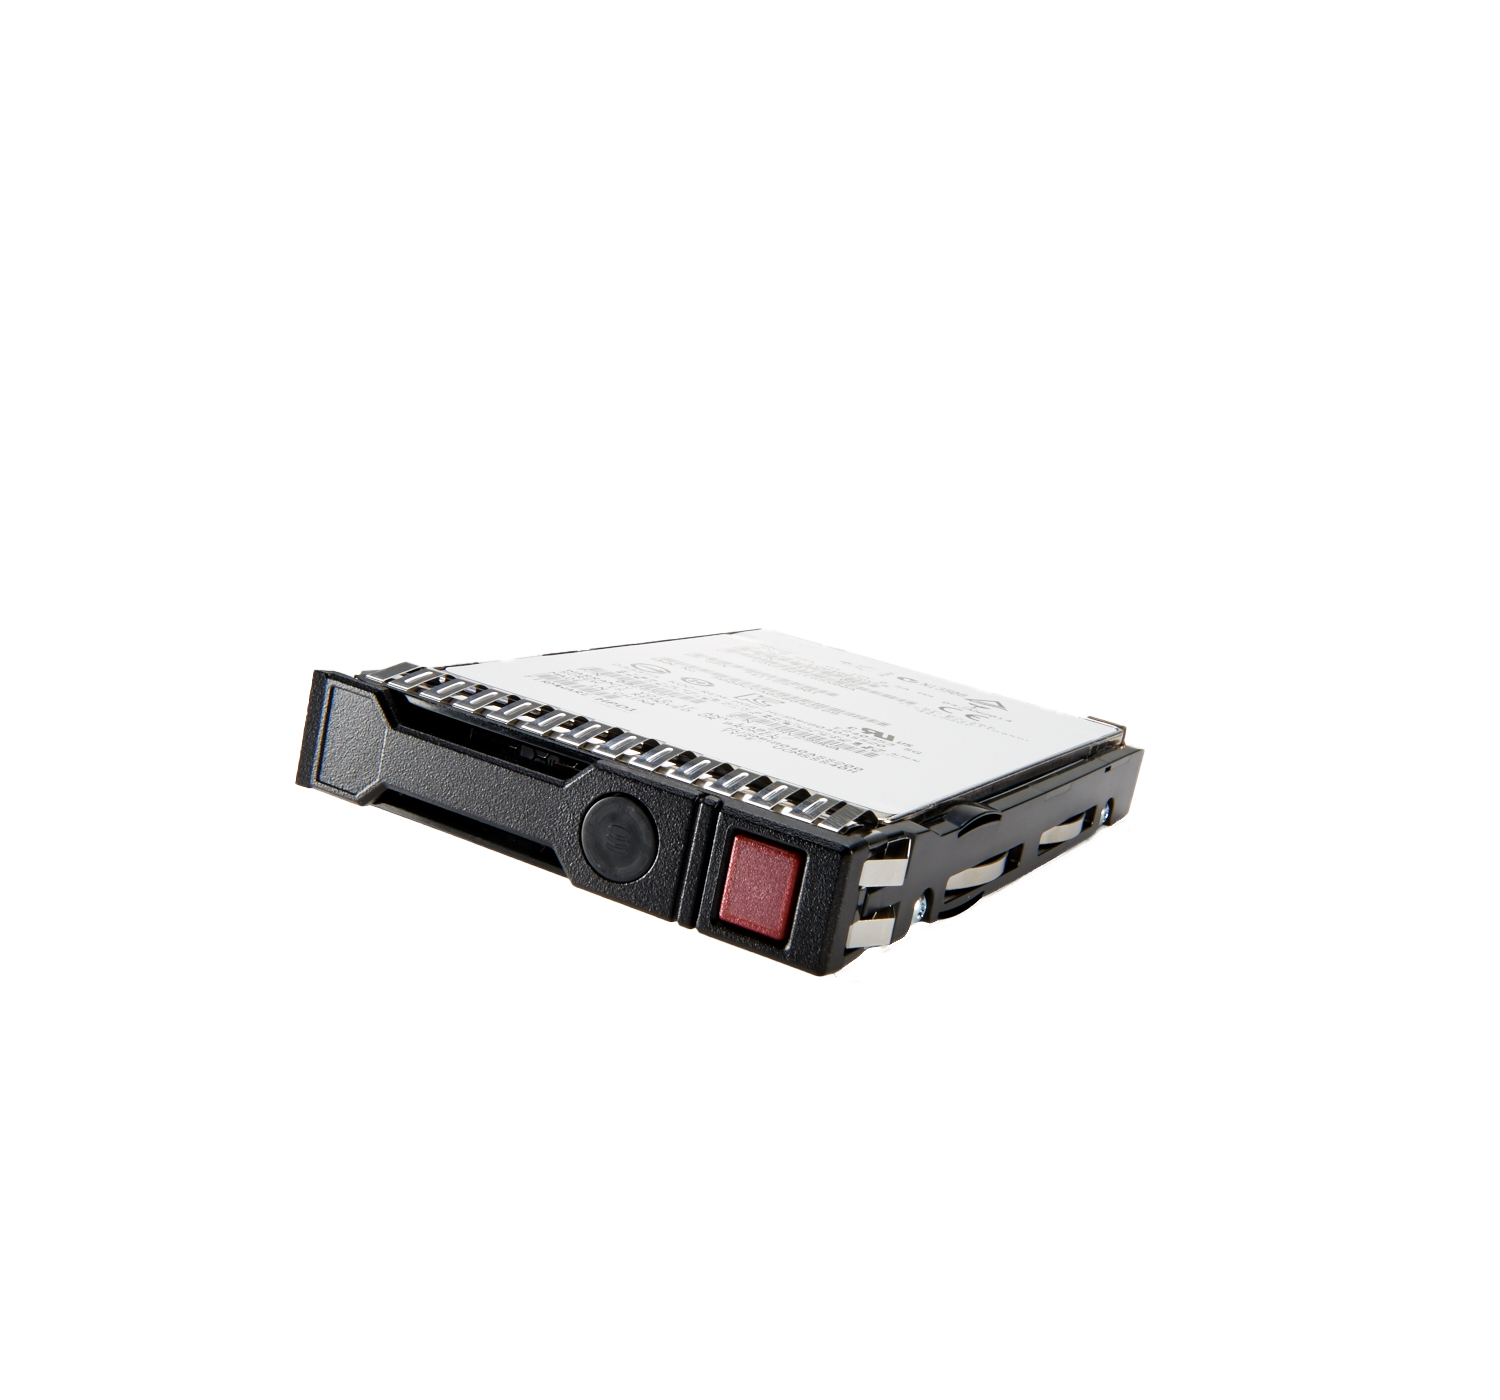 Hewlett Packard Enterprise N9X95A-RFB internal solid state drive 2.5" 400 GB SAS